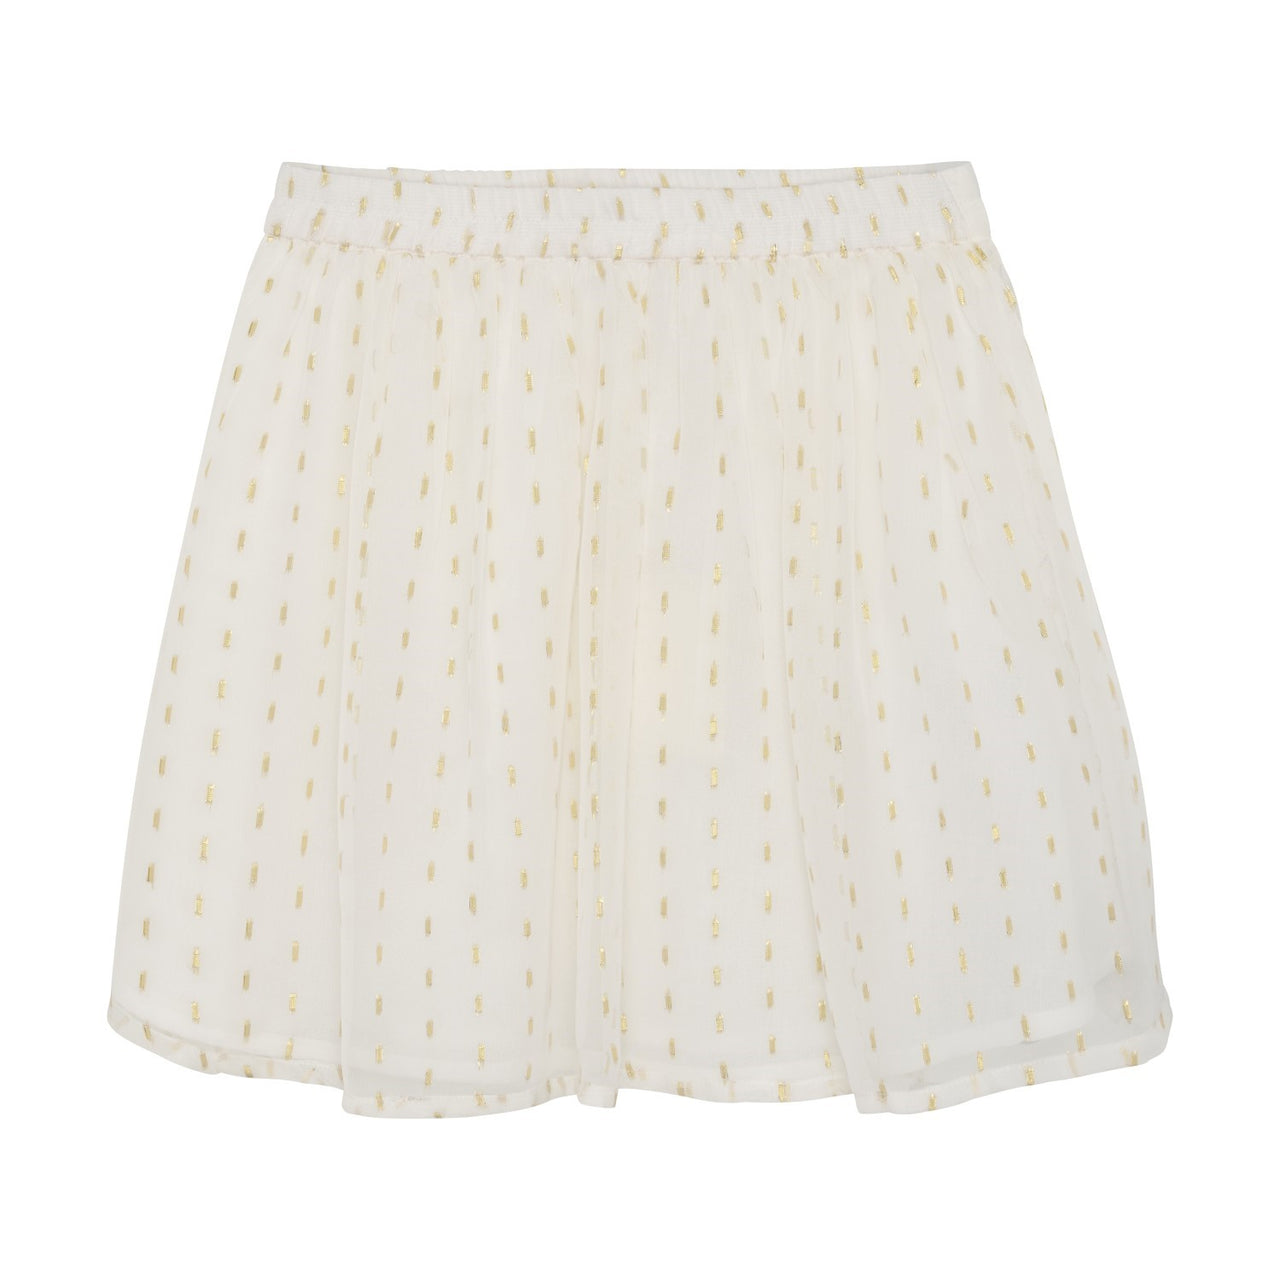 Buttercream Chiffon Skirt